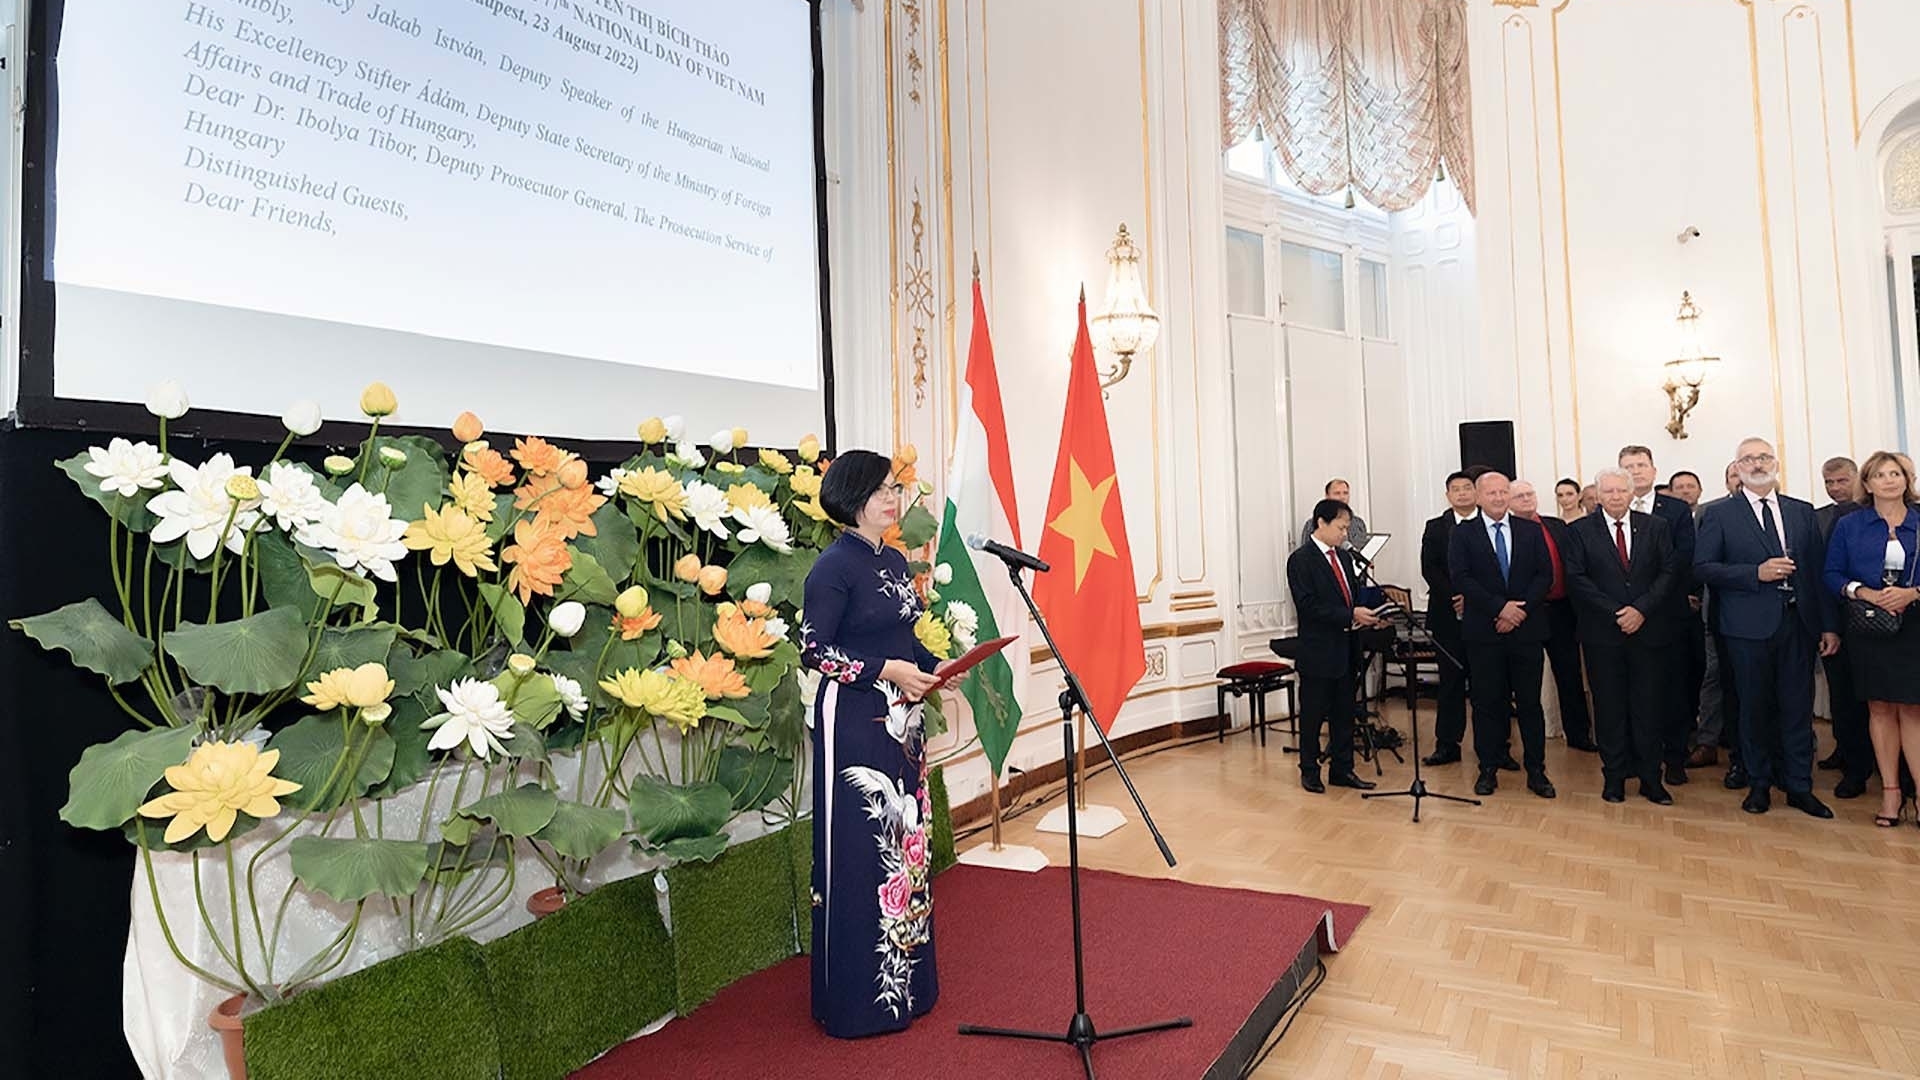 庆祝越南国庆77周年纪念典礼在匈牙利举行